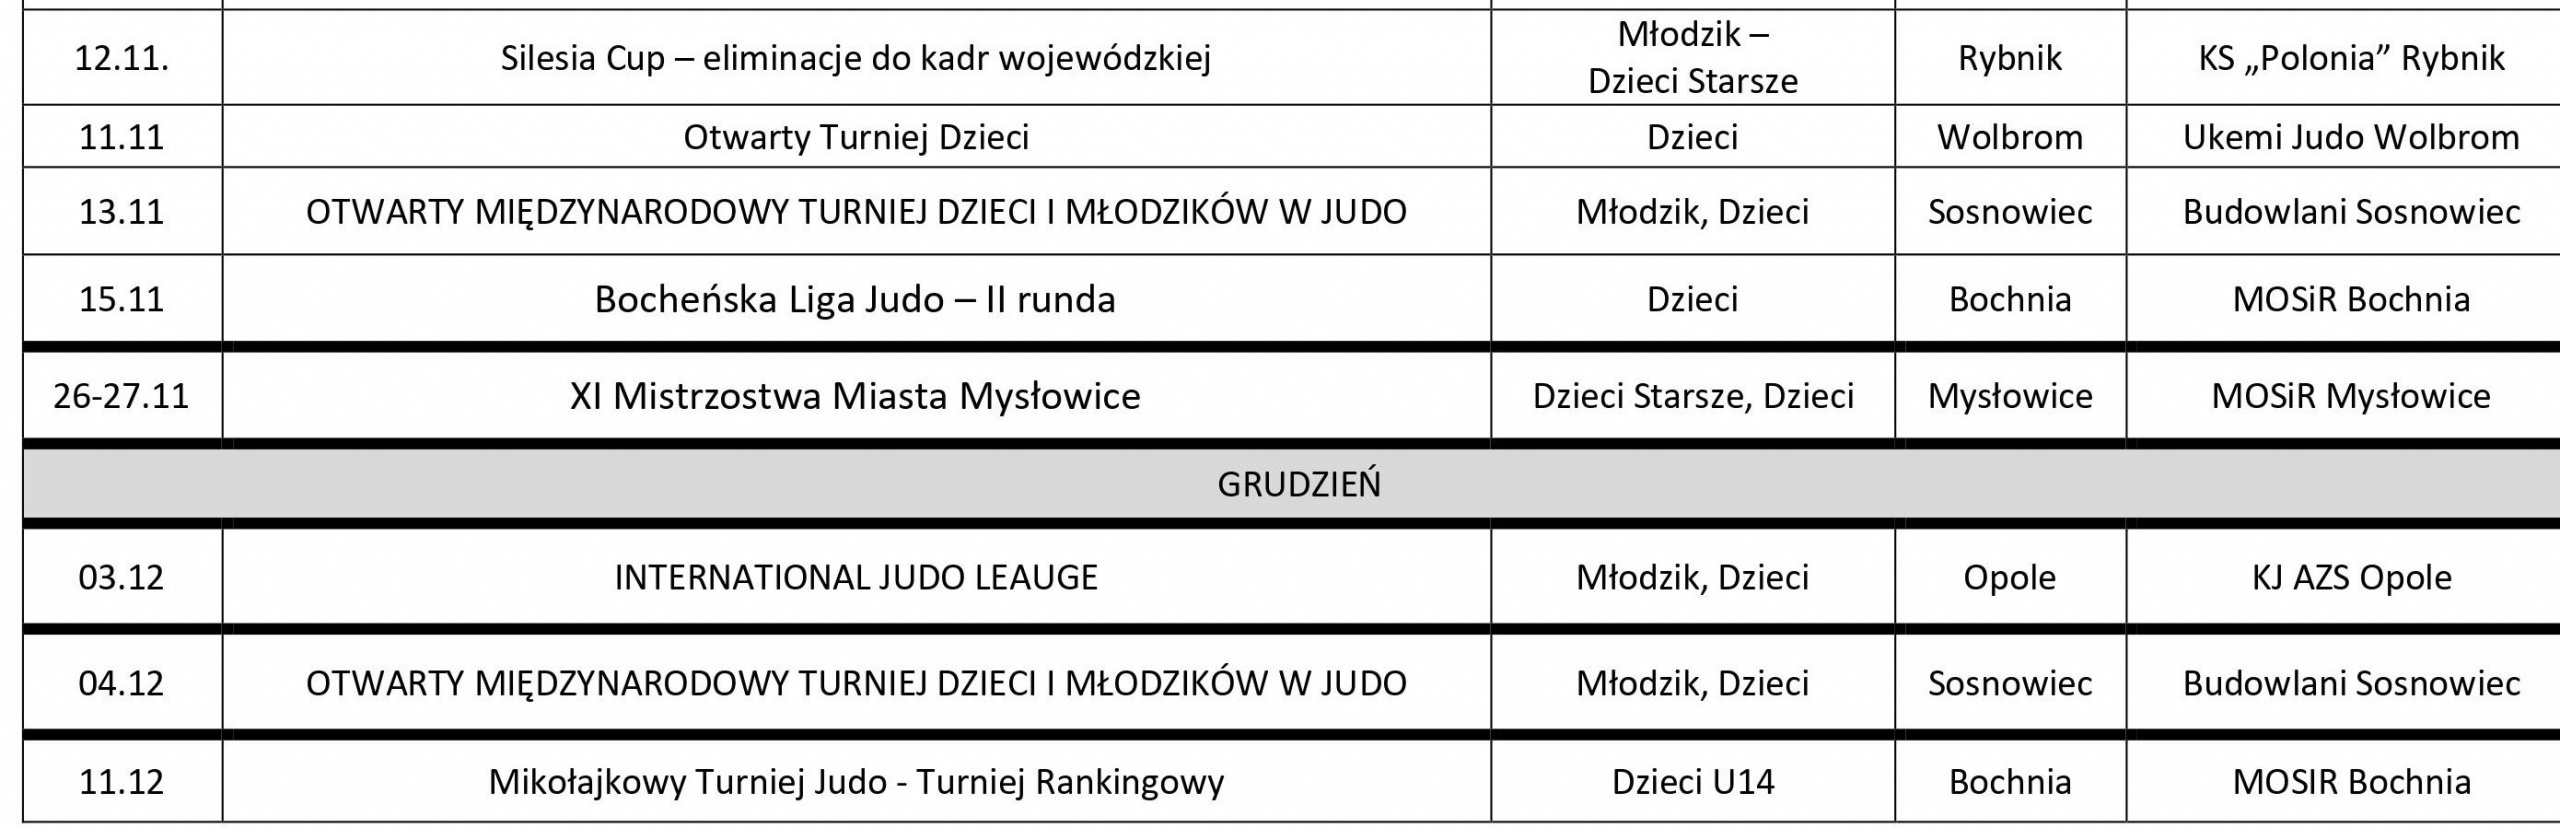 Wykaz-zawodów-sekcji-Judo-MOSiR-Bochniaod-12.11.-11.12.2022-